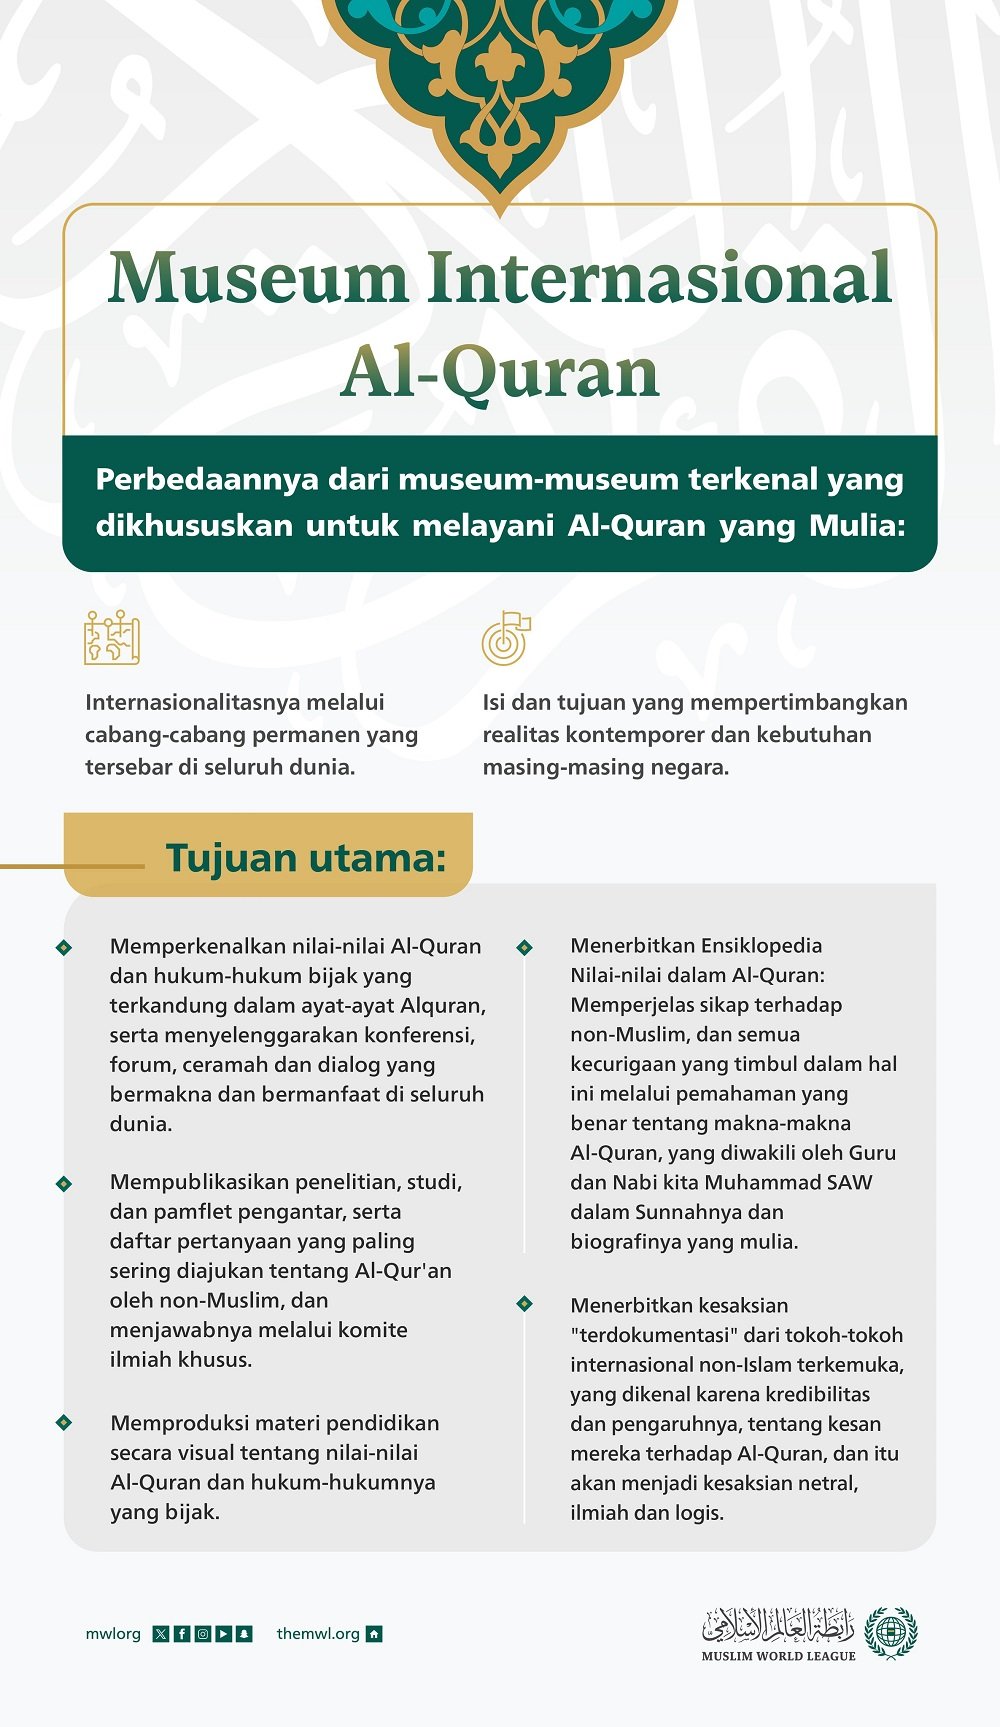 Museum Internasional Al-Quran: Museum yang berbeda karena internasionalitas, isi, tujuan dan sasarannya. Mari kita pelajari lebih lanjut: